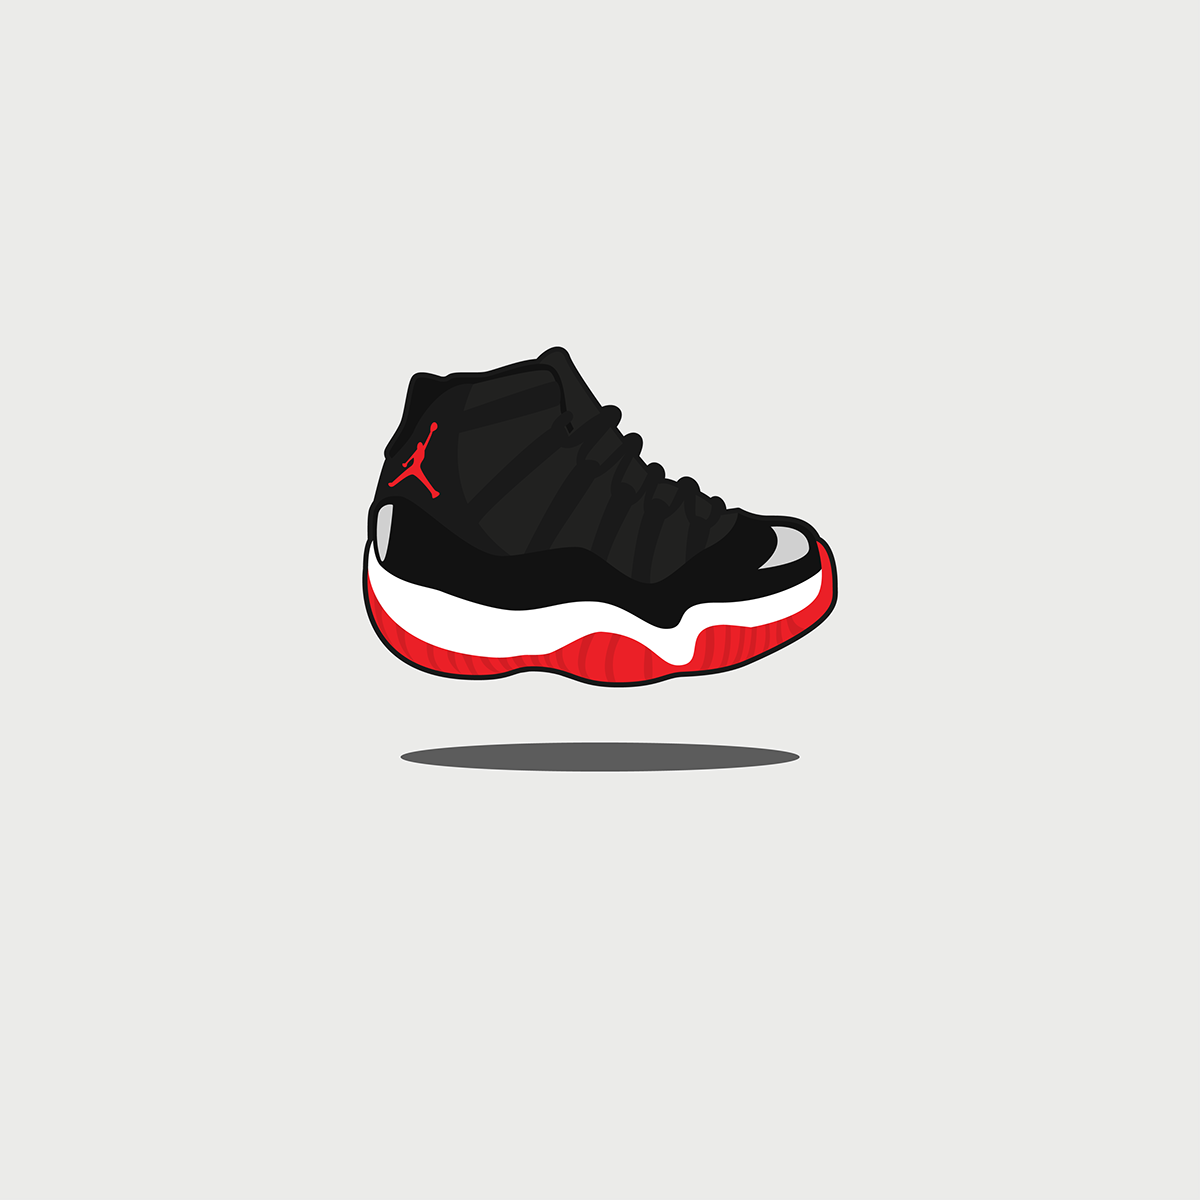 air jordan sneaker adidas Nike BRED Carmine cute sneakerhead jumpman Flying yeezy vector Yeezus Kanye West jeremy scott